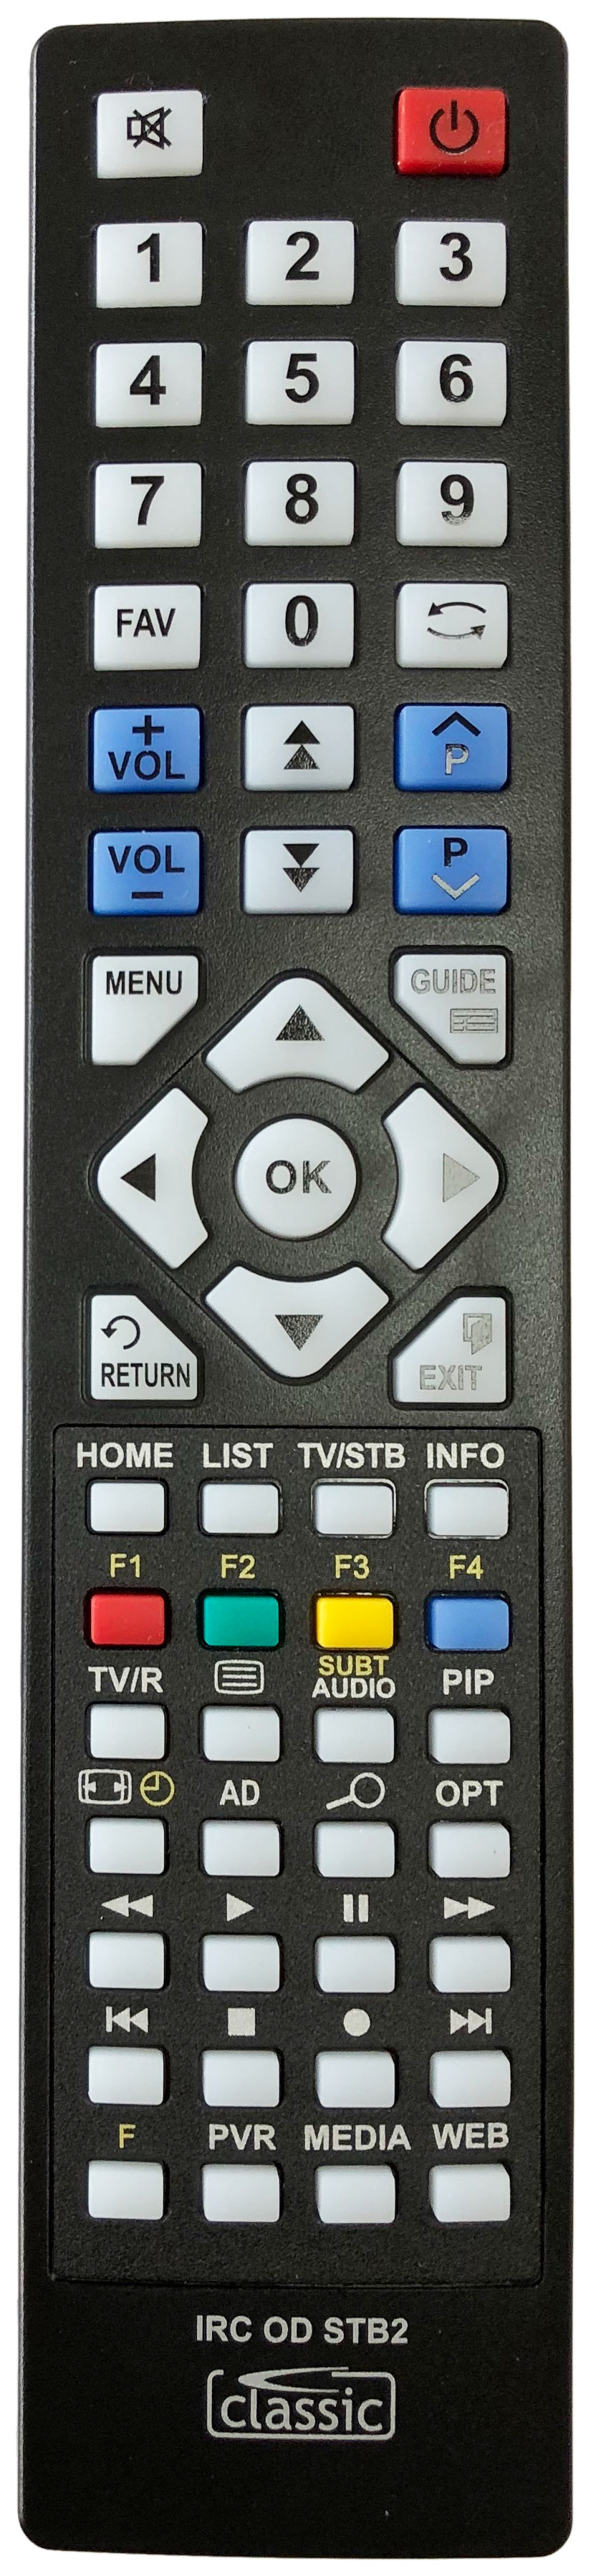 HUMAX 03202-00184 Remote Control Alternative